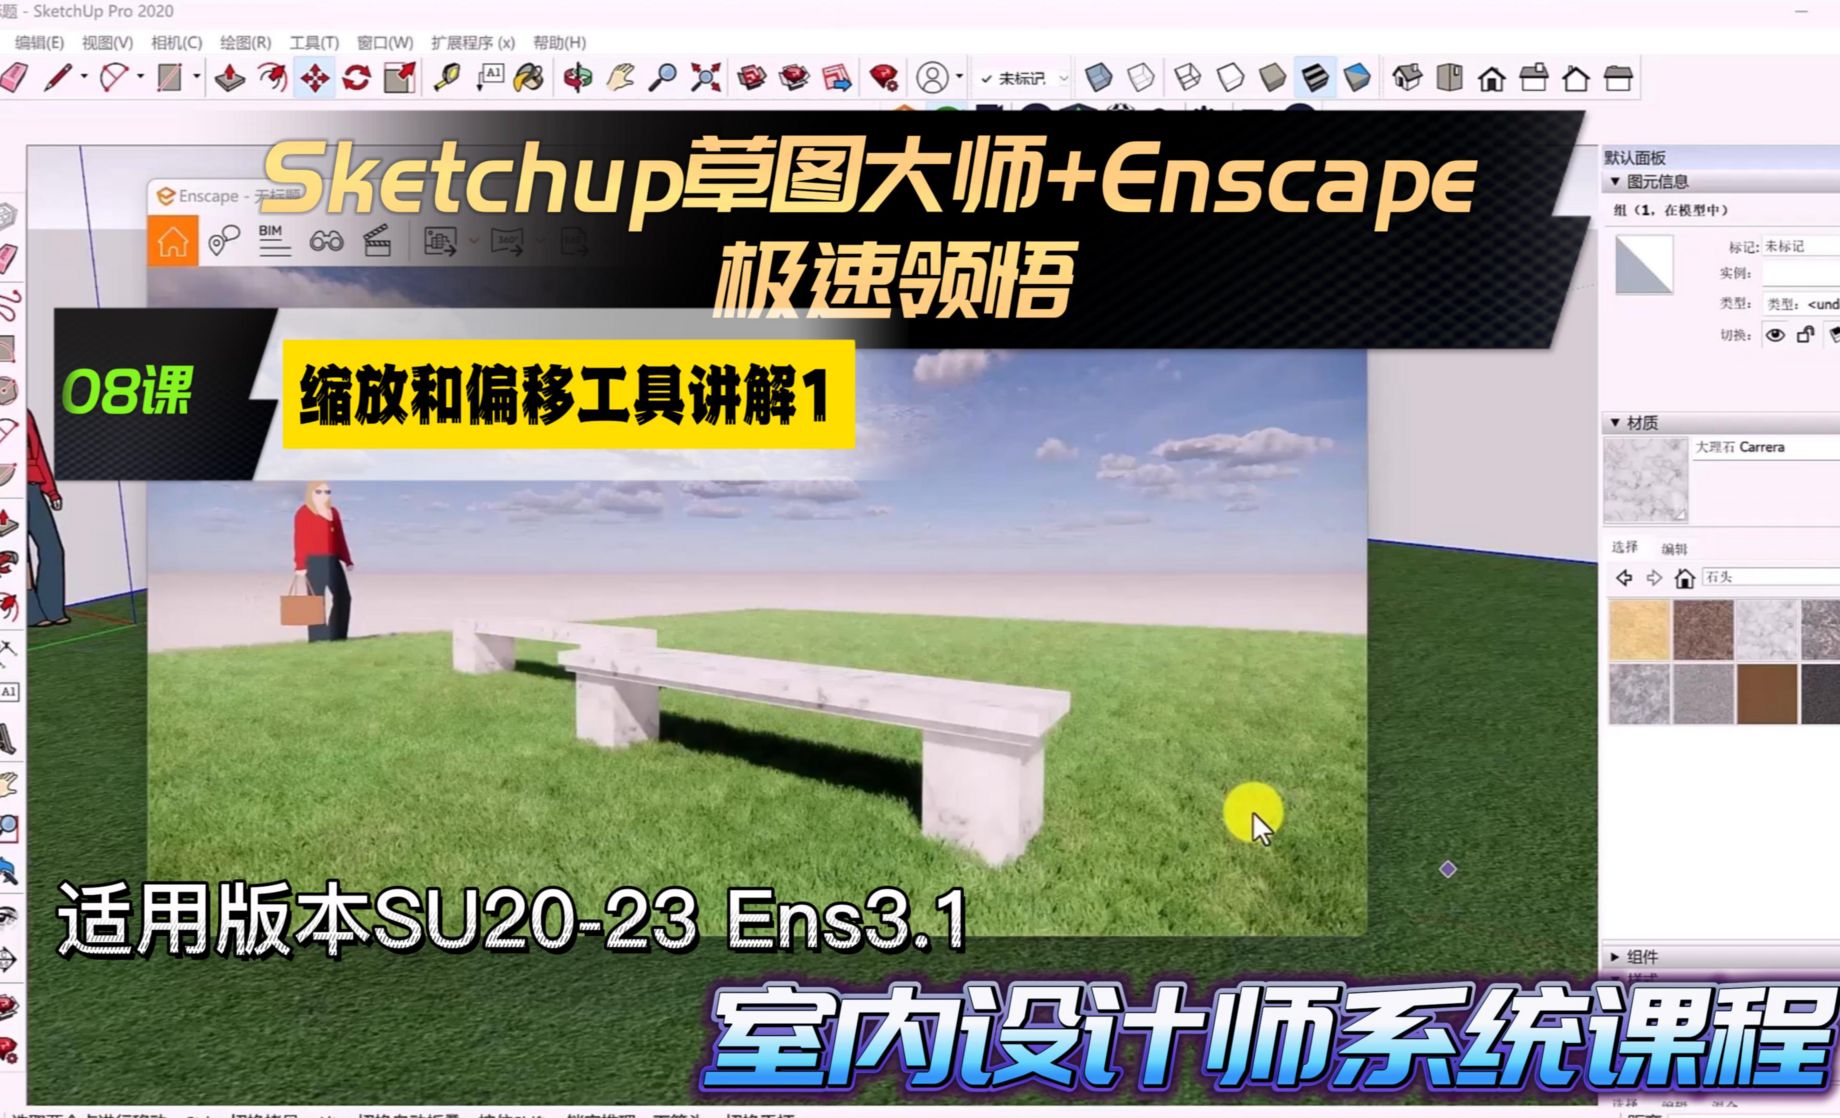 Sketchup+Enscape室内设计极速领悟-缩放和偏移工具1